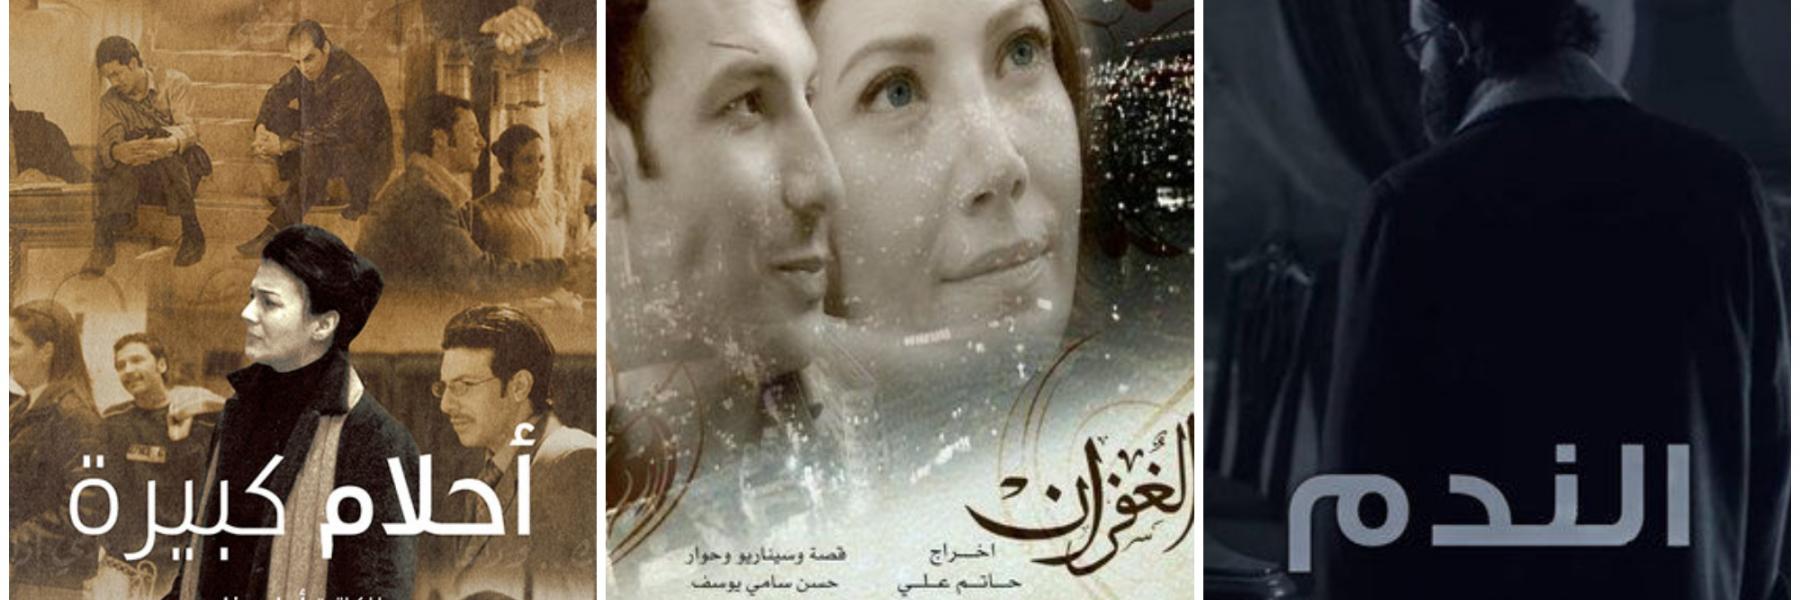 5 قصص حب مميزة تناولتها الدراما السورية